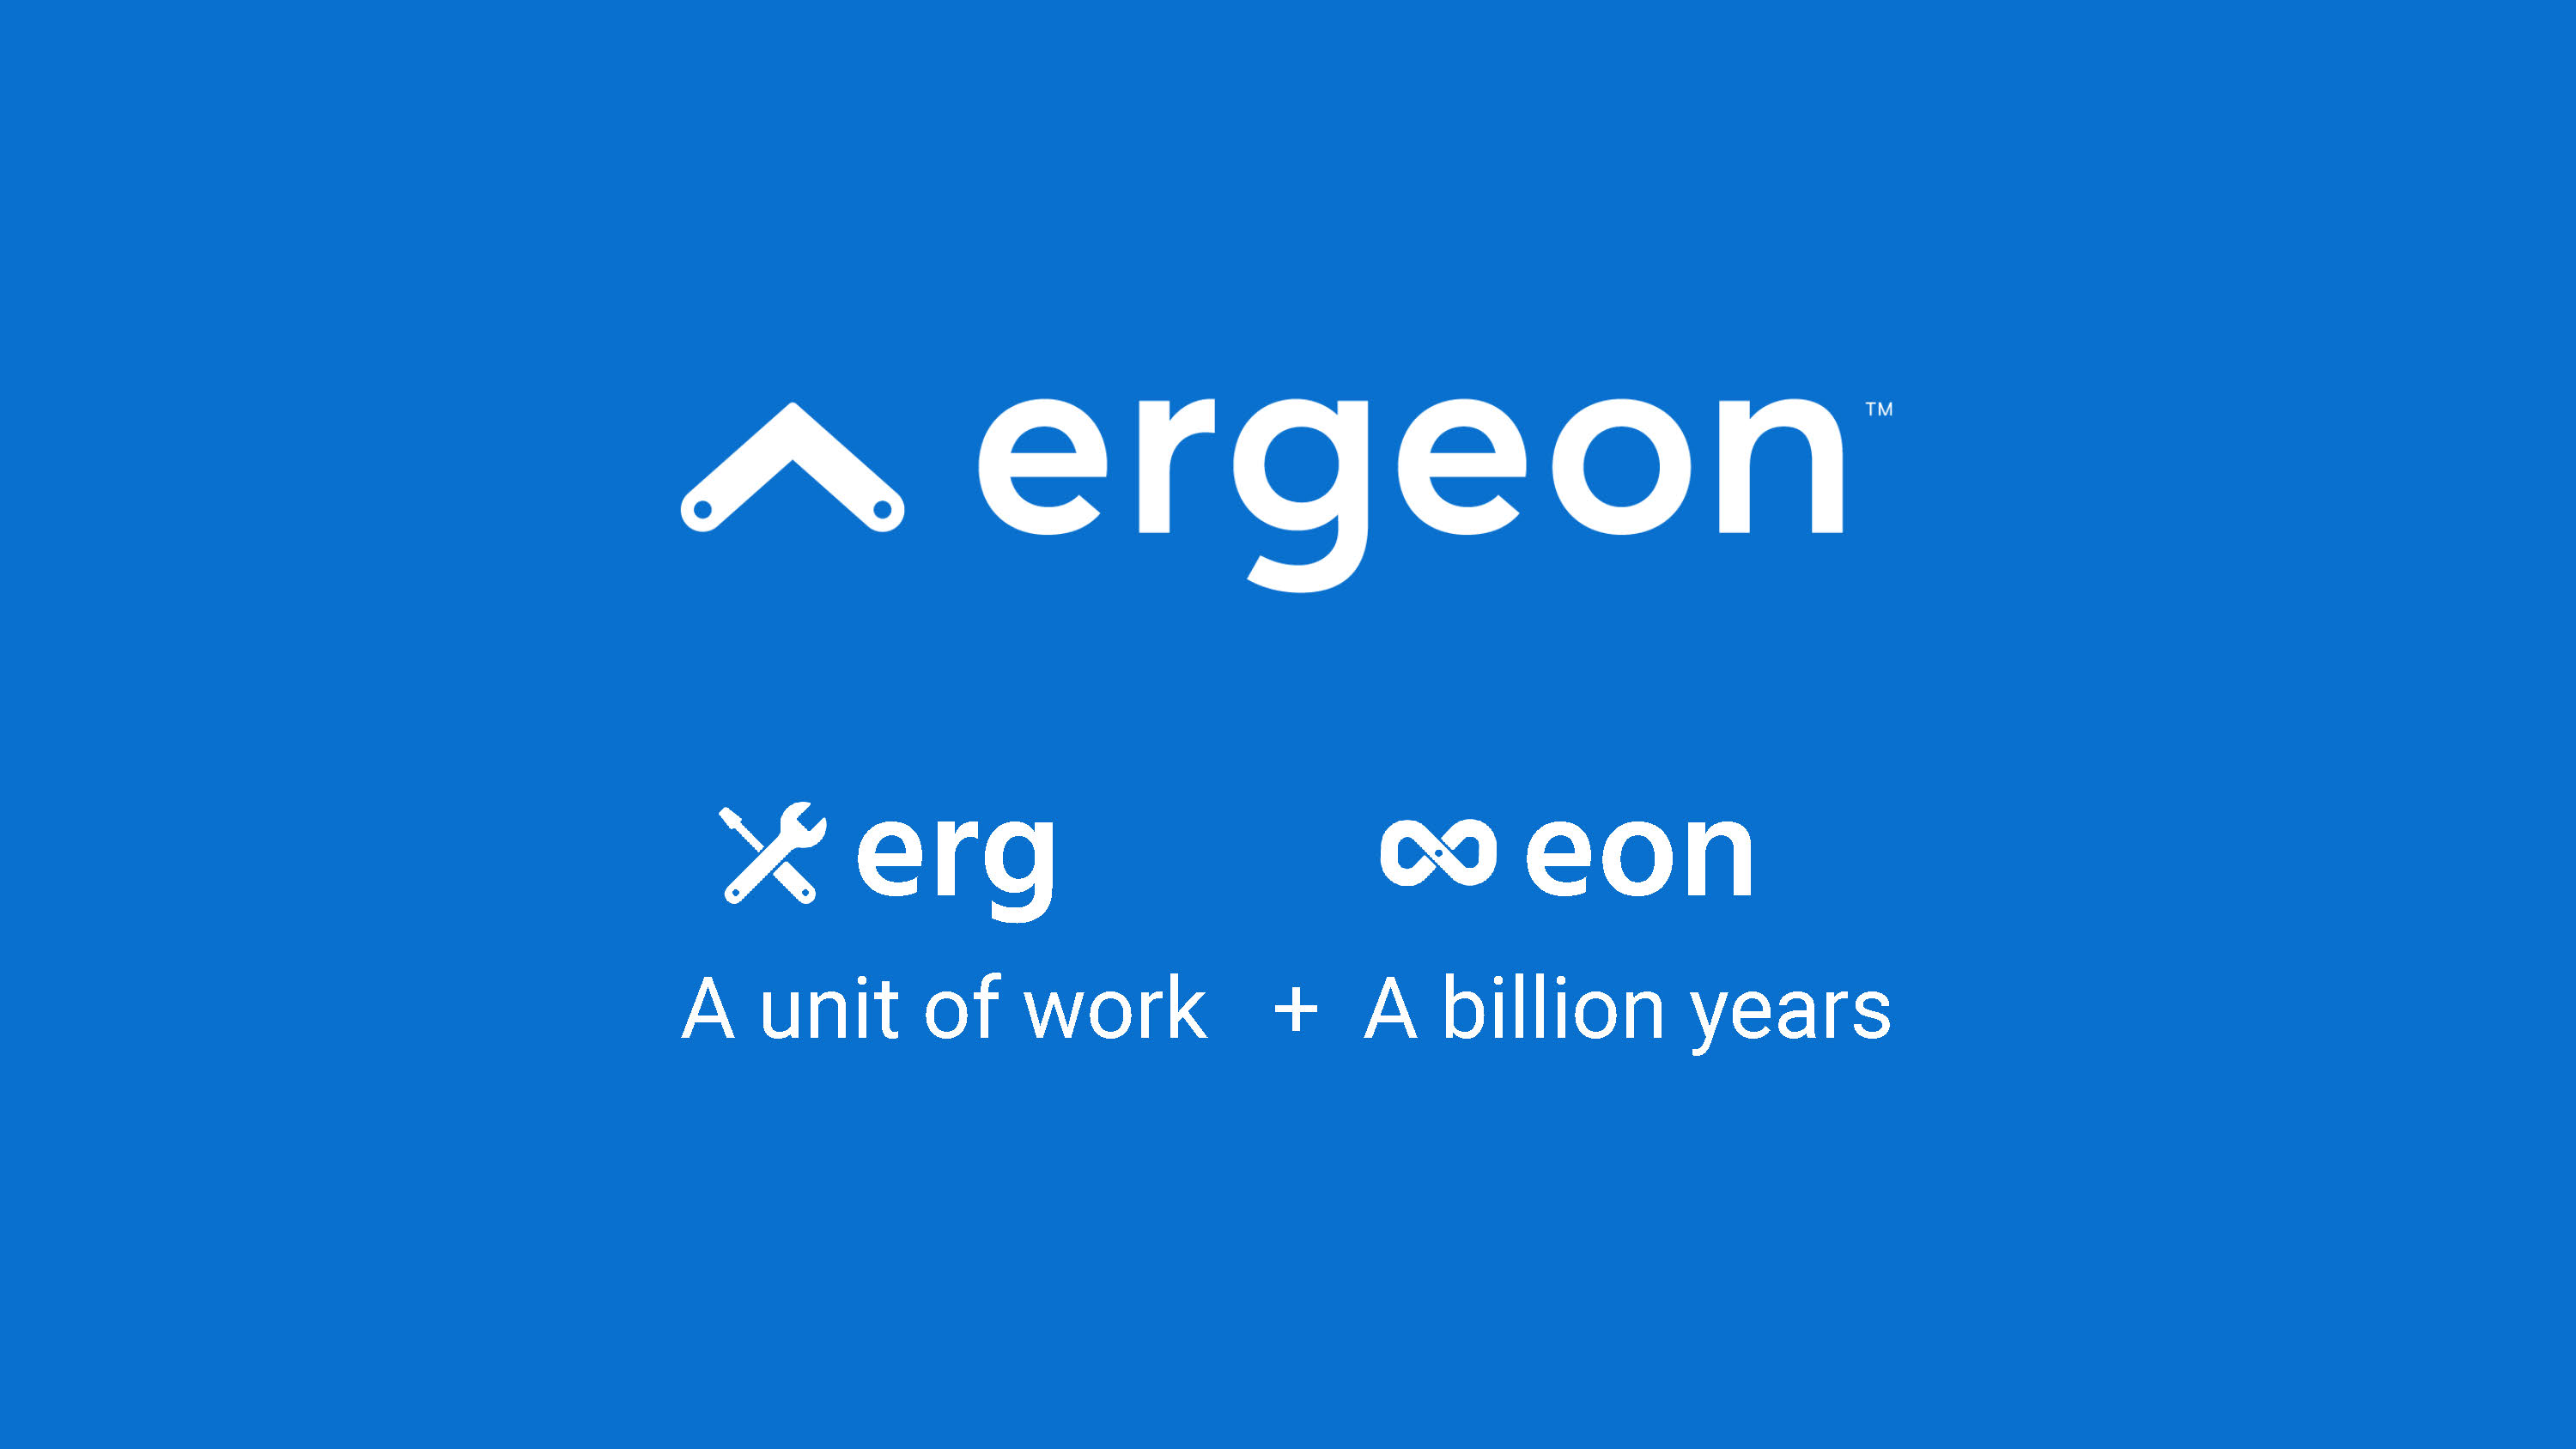 Ergeon explains its name